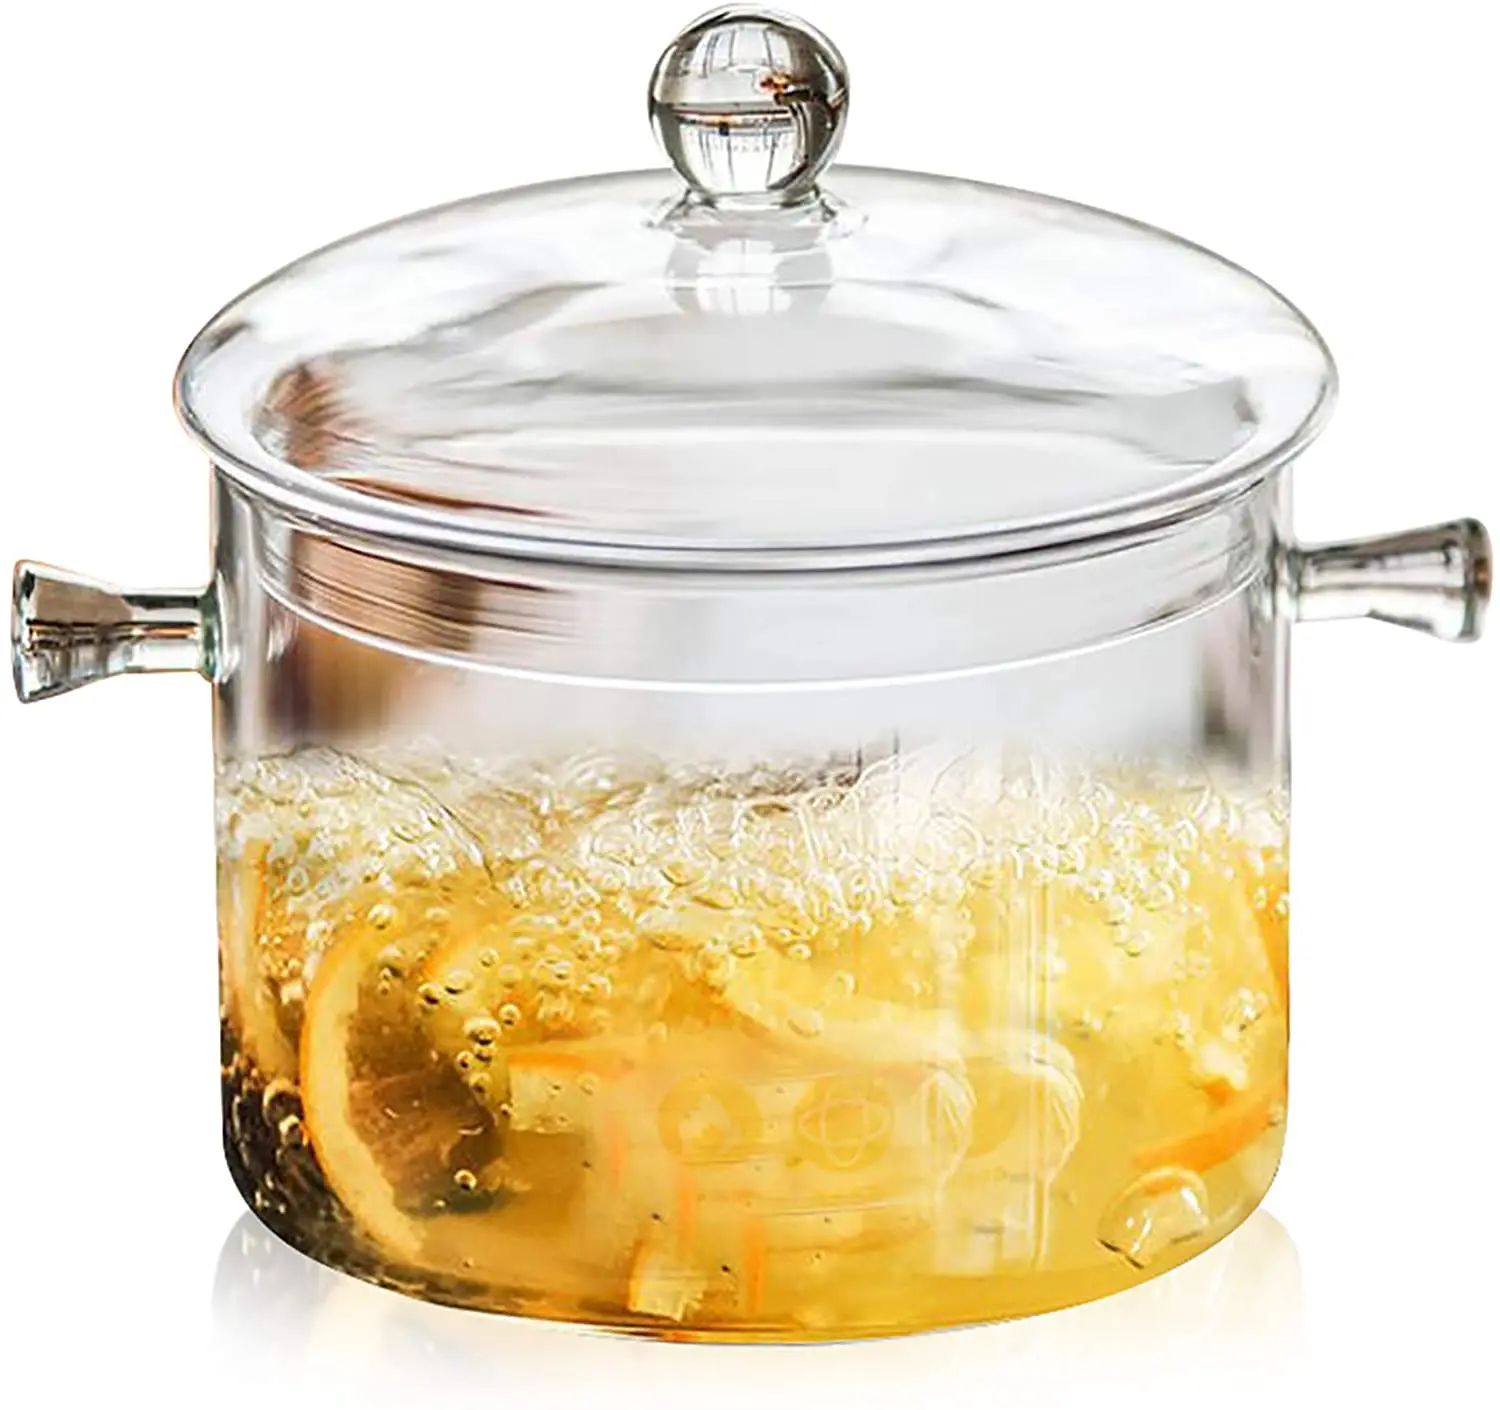  Glass Cooking Pot - 1.5L/50OZ Glass Saucepan Heat-Resistant  Borosilicate Glass Handmade Cookware Set stovetop Pot - Safe for Pasta  Noodle, Soup, Milk, Tea,salad (1.5L/50OZ): Home & Kitchen